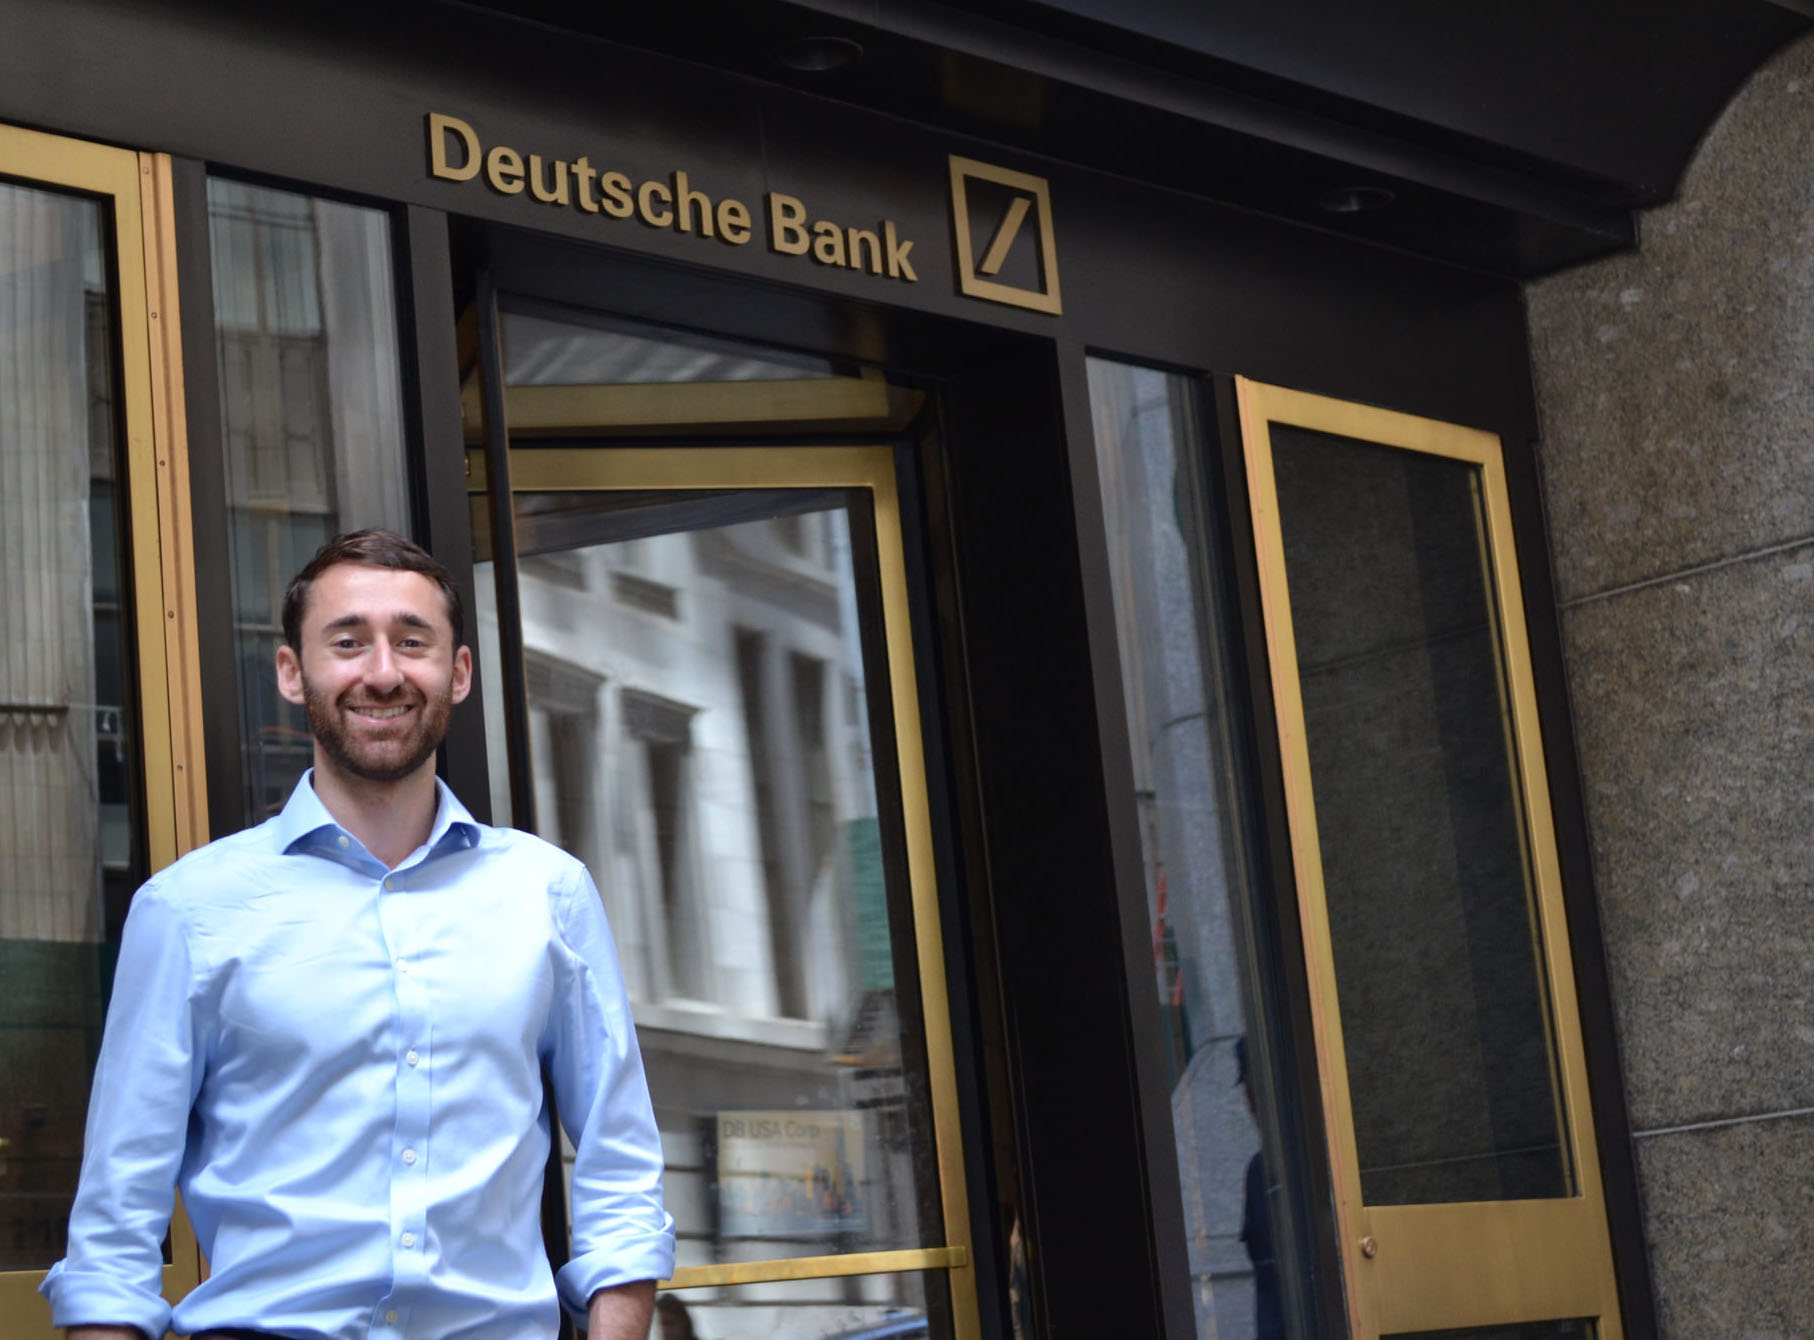 Elan Telem standing in front of Deutsche Bank